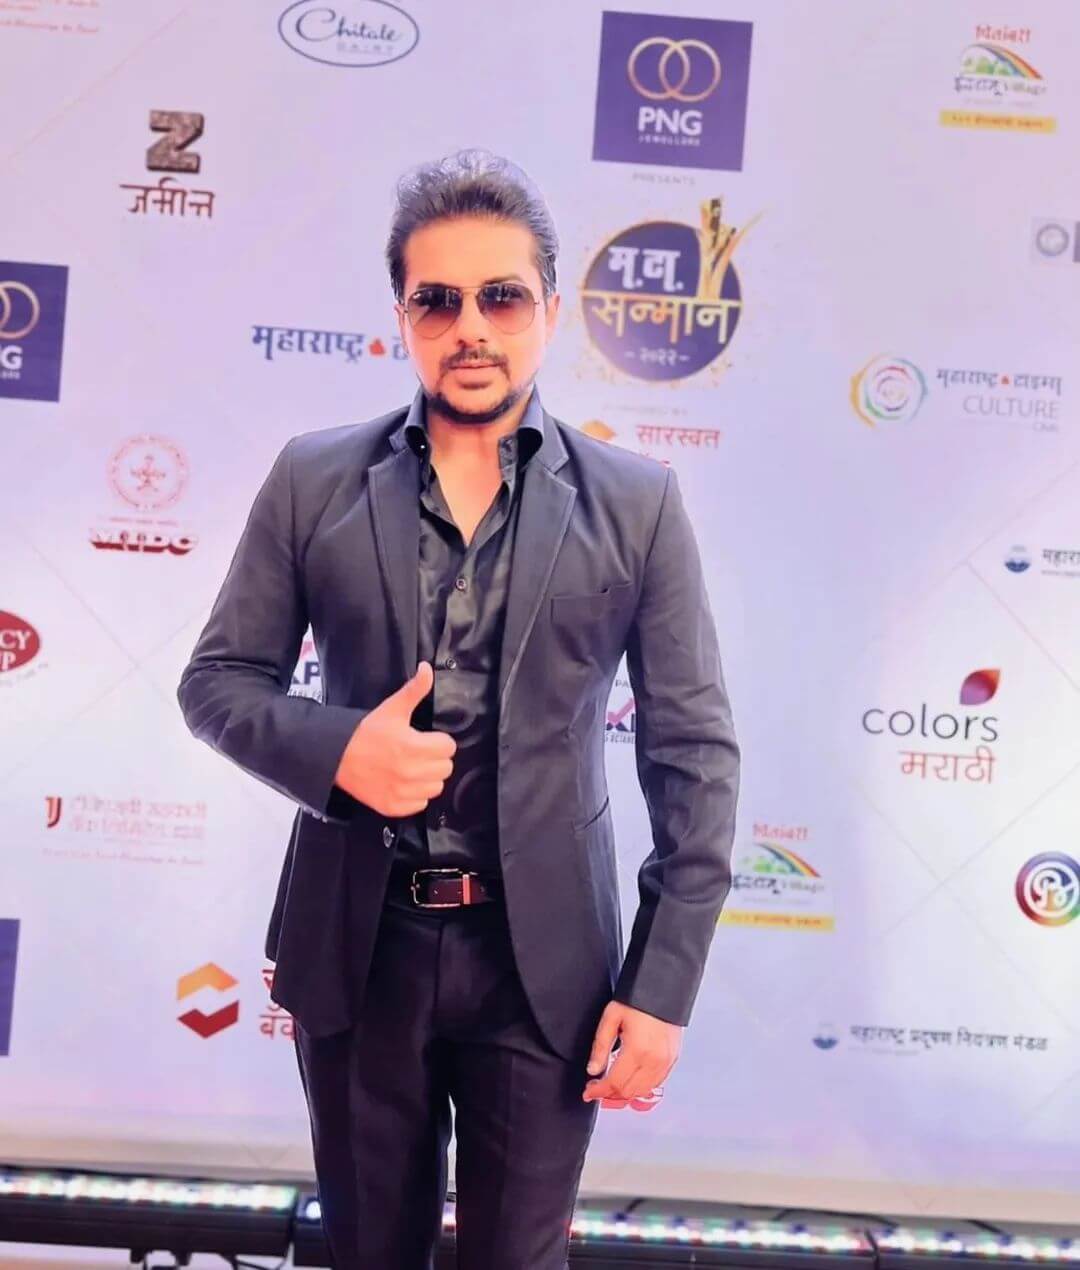 Actor Pushkar Jog in suit